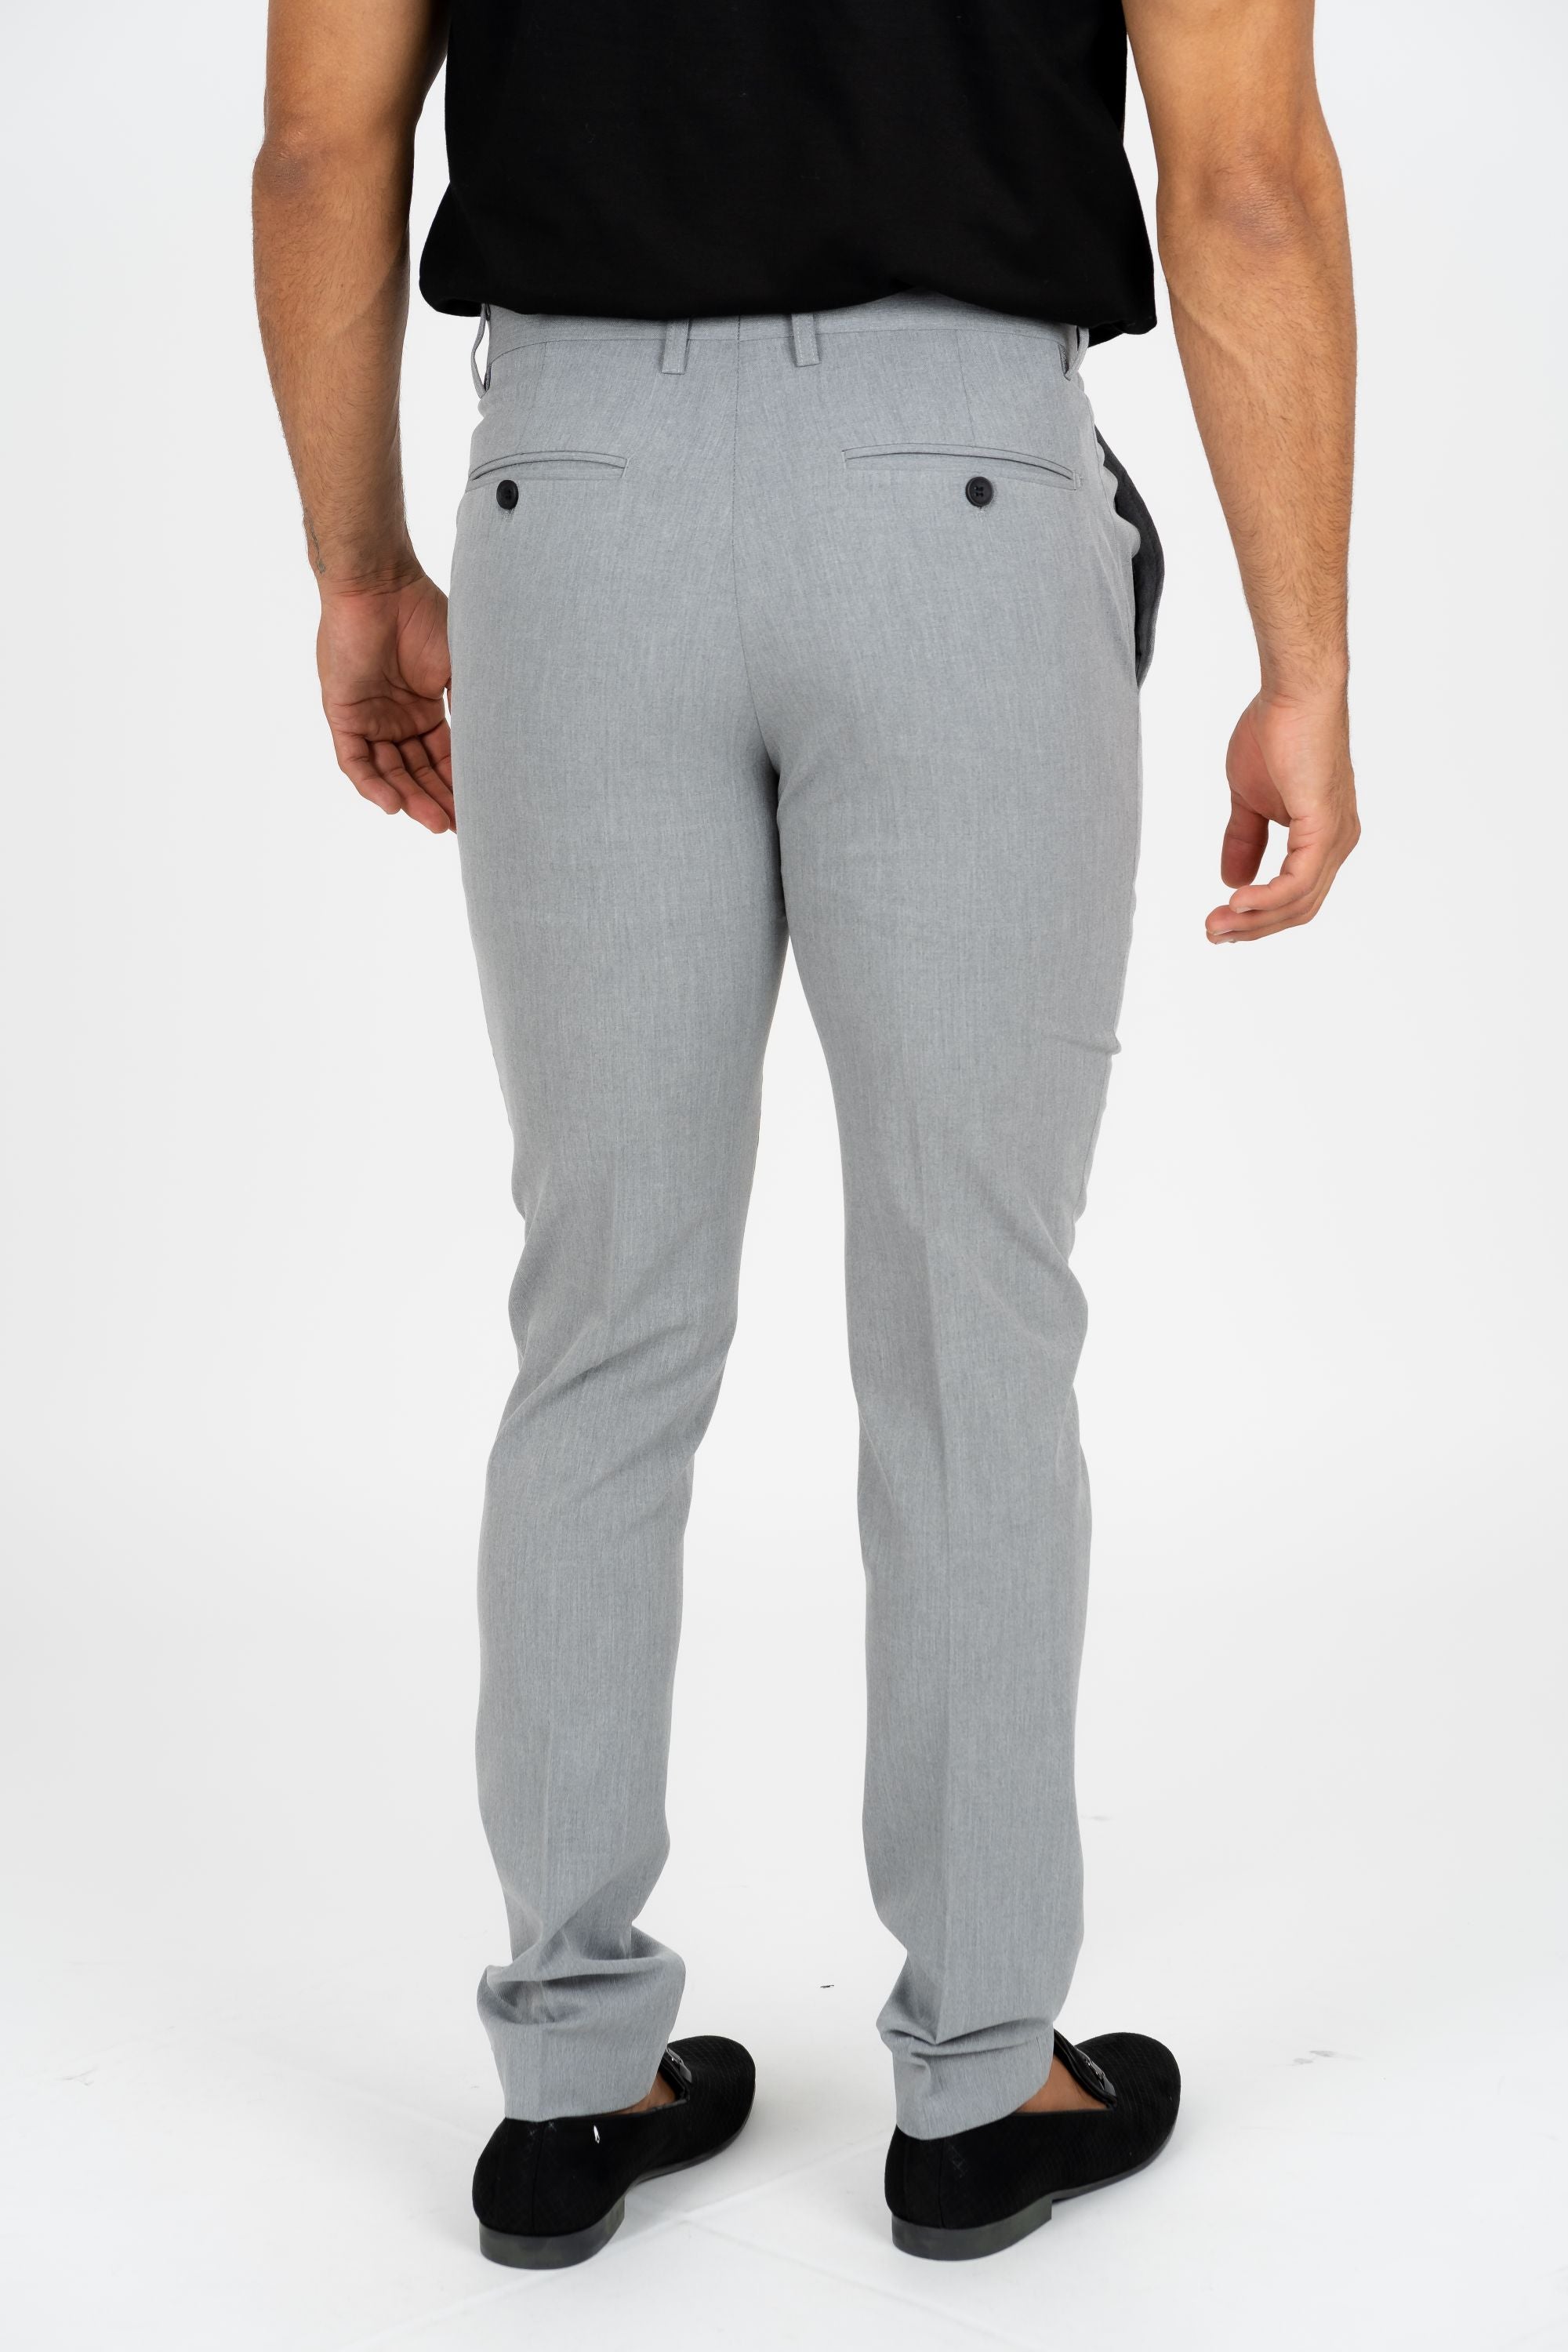 Khaki Grey Pants for Women - Women Fashion - JULIETTE C